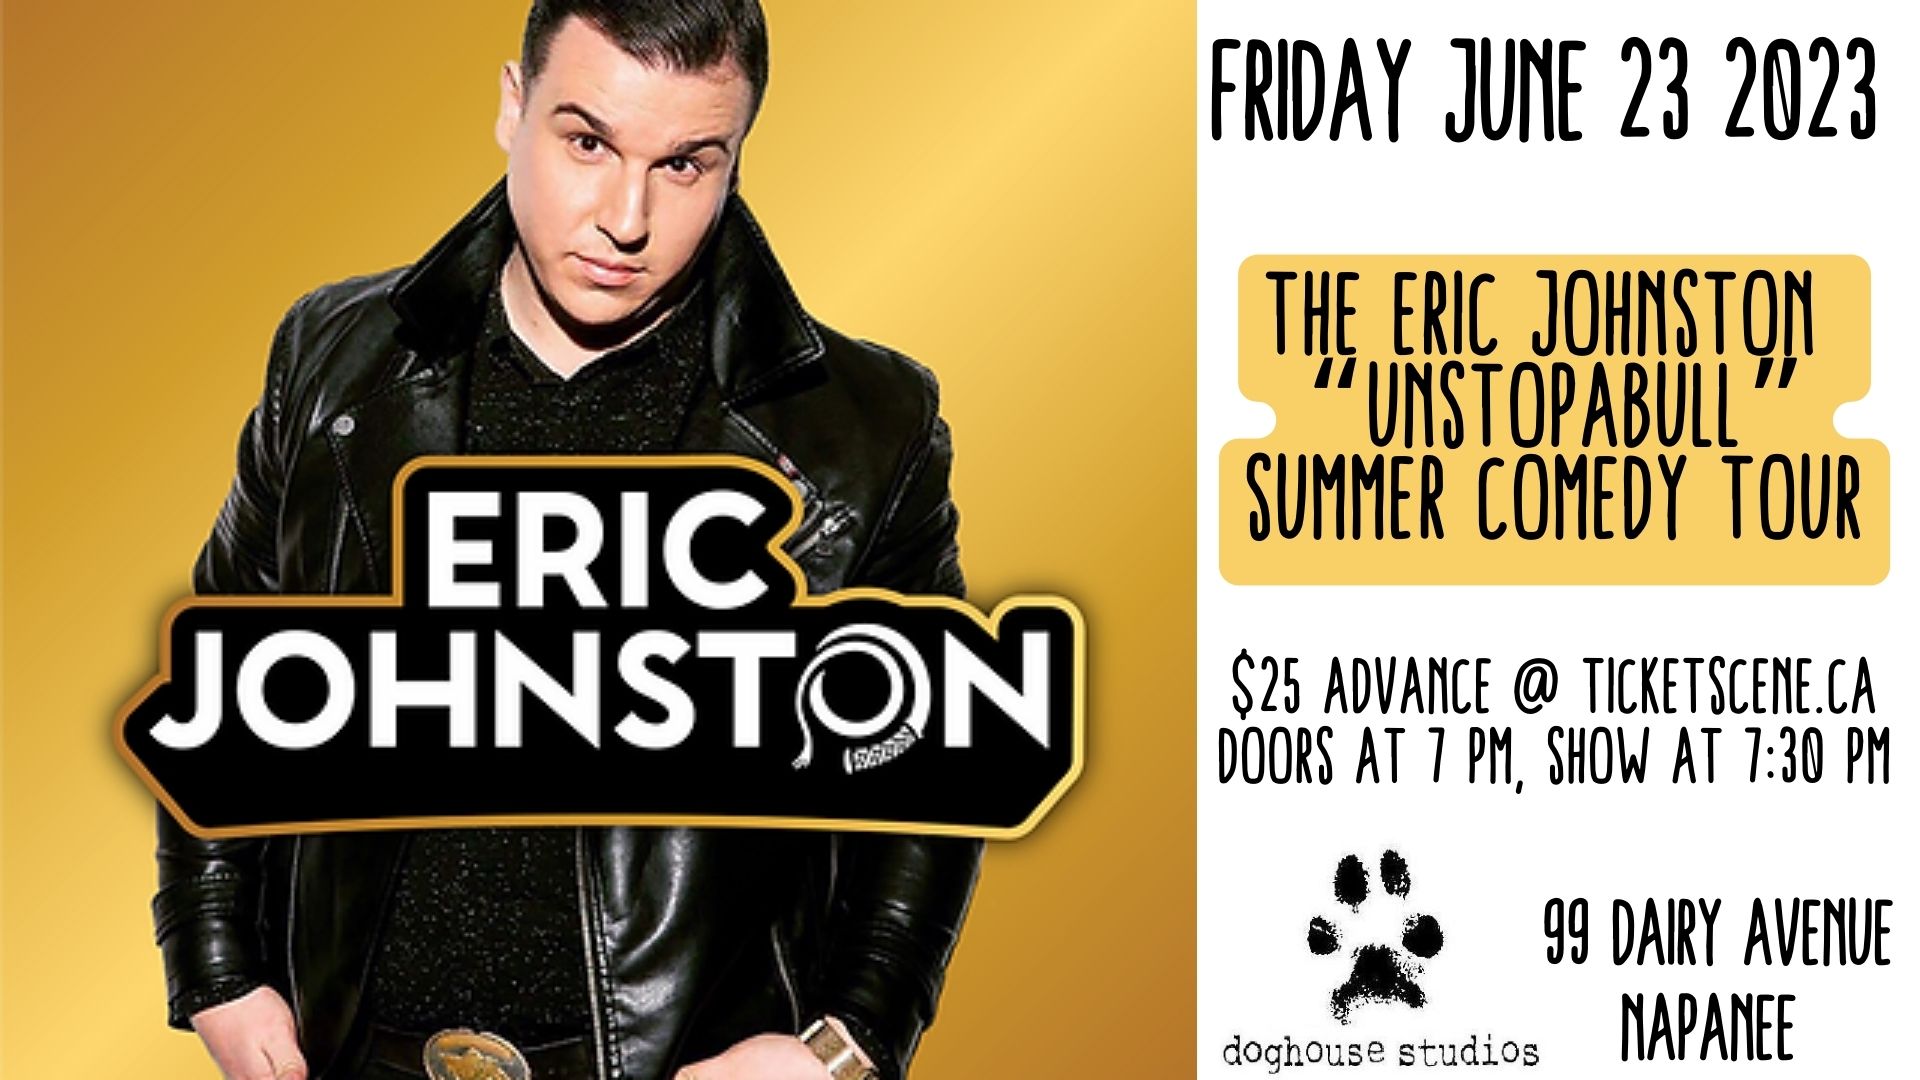 The Eric Johnston “UnstopaBULL Summer Comedy Tour